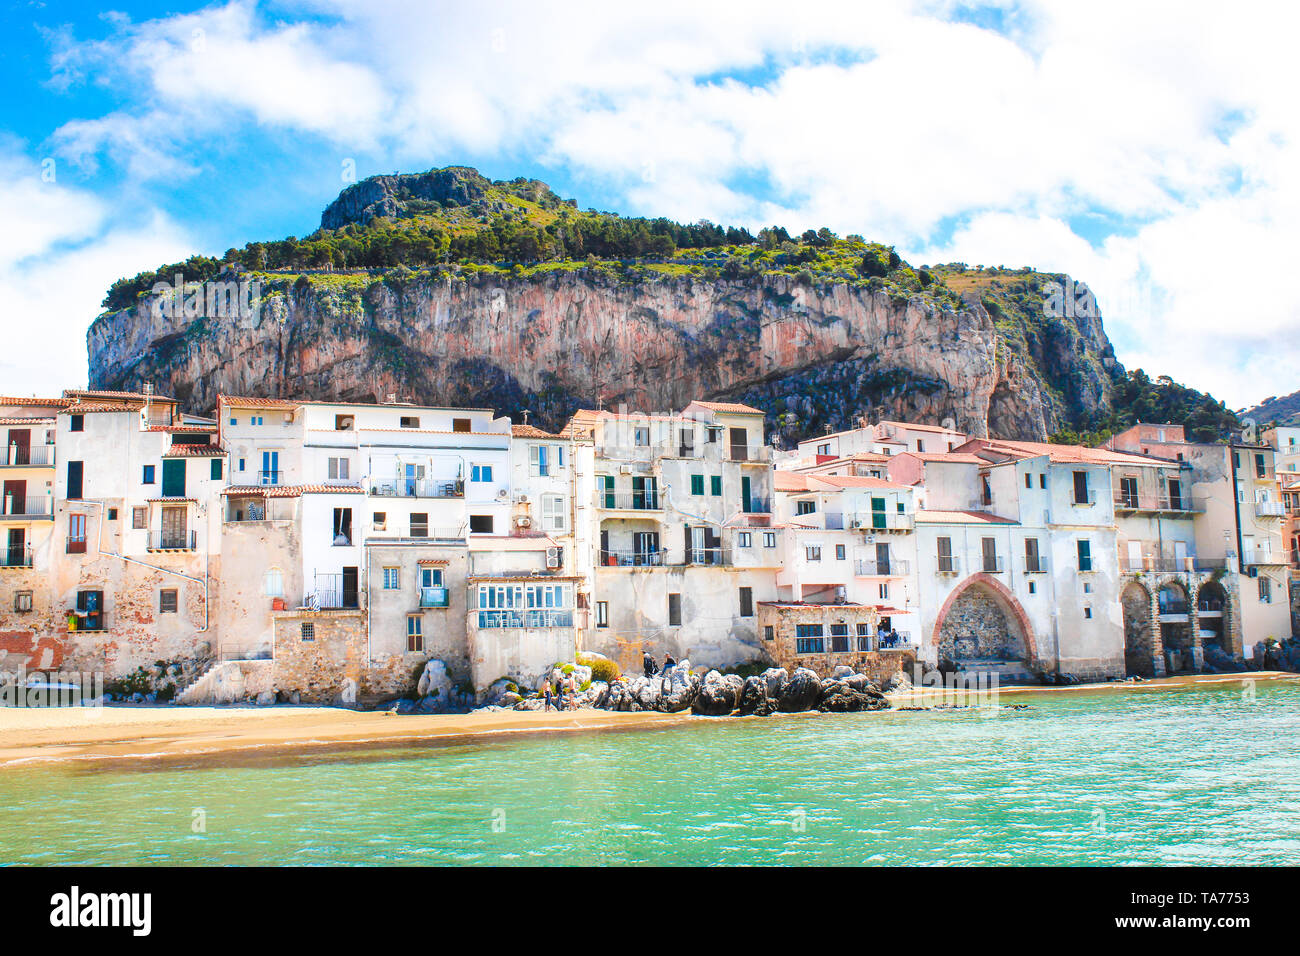 Incredibile vecchie case sulla costa del Mar Tirreno nella splendida Cefalù, Sicilia, Italia. Dietro gli edifici meravigliosi rock che si affaccia sulla costa. La città siciliana è una popolare attrazione turistica. Foto Stock